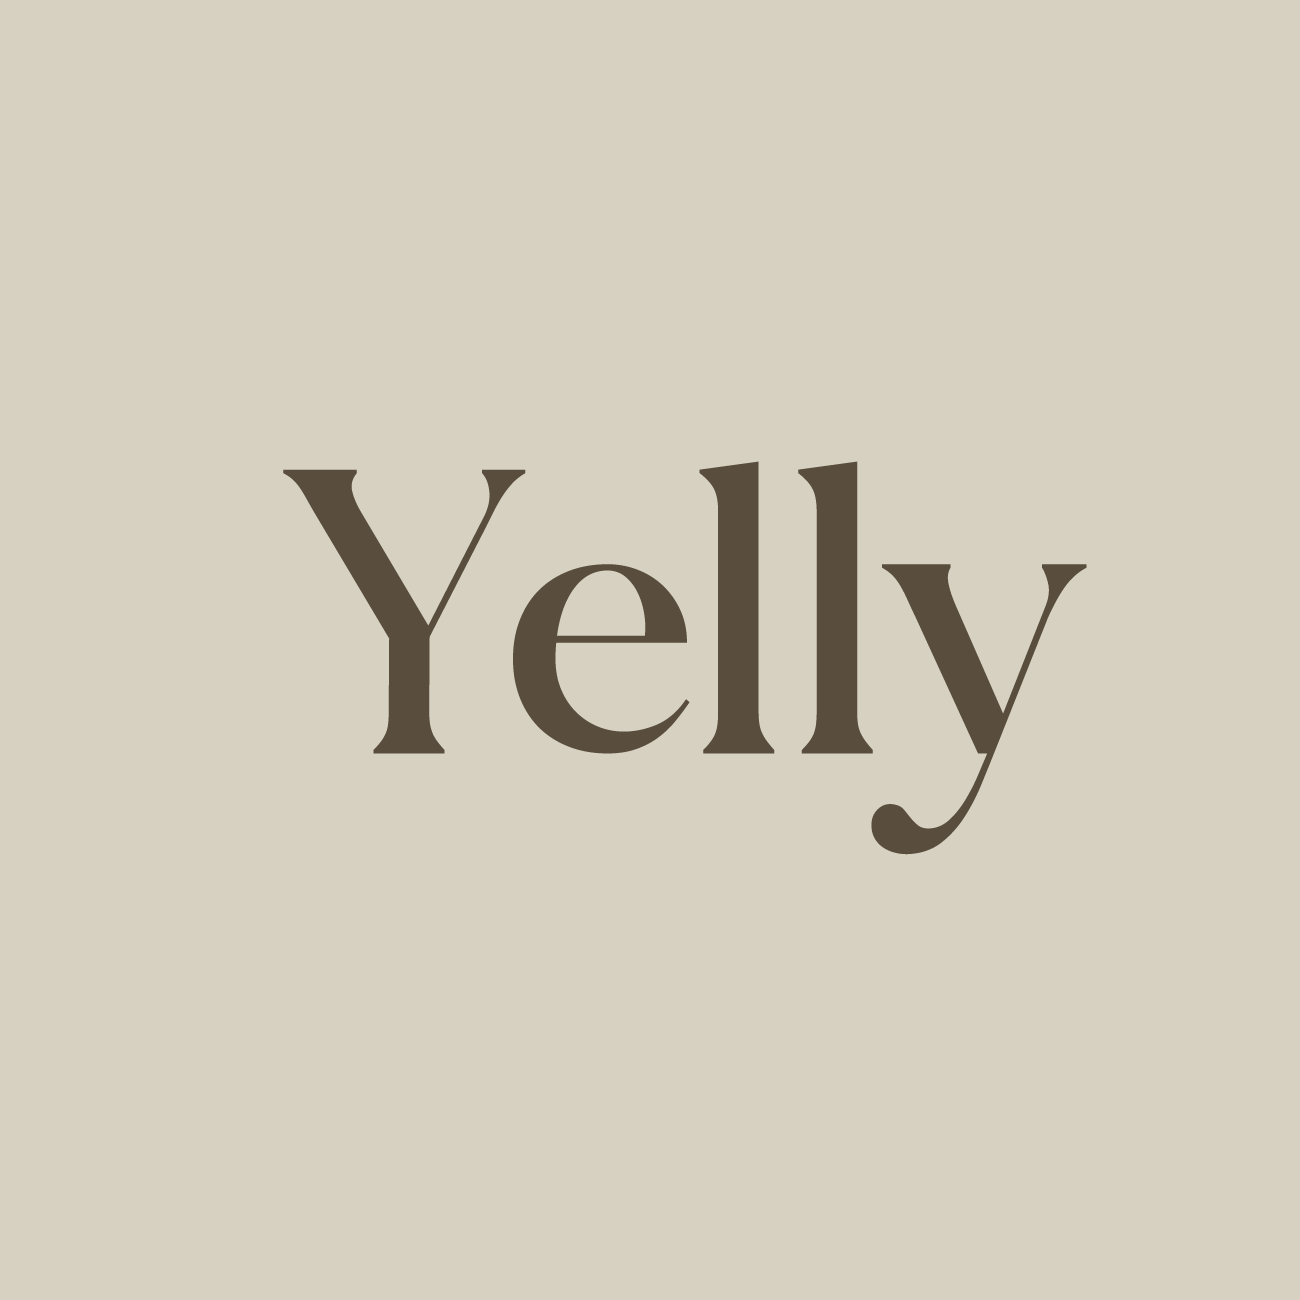 옐리 | Yelly 아바타